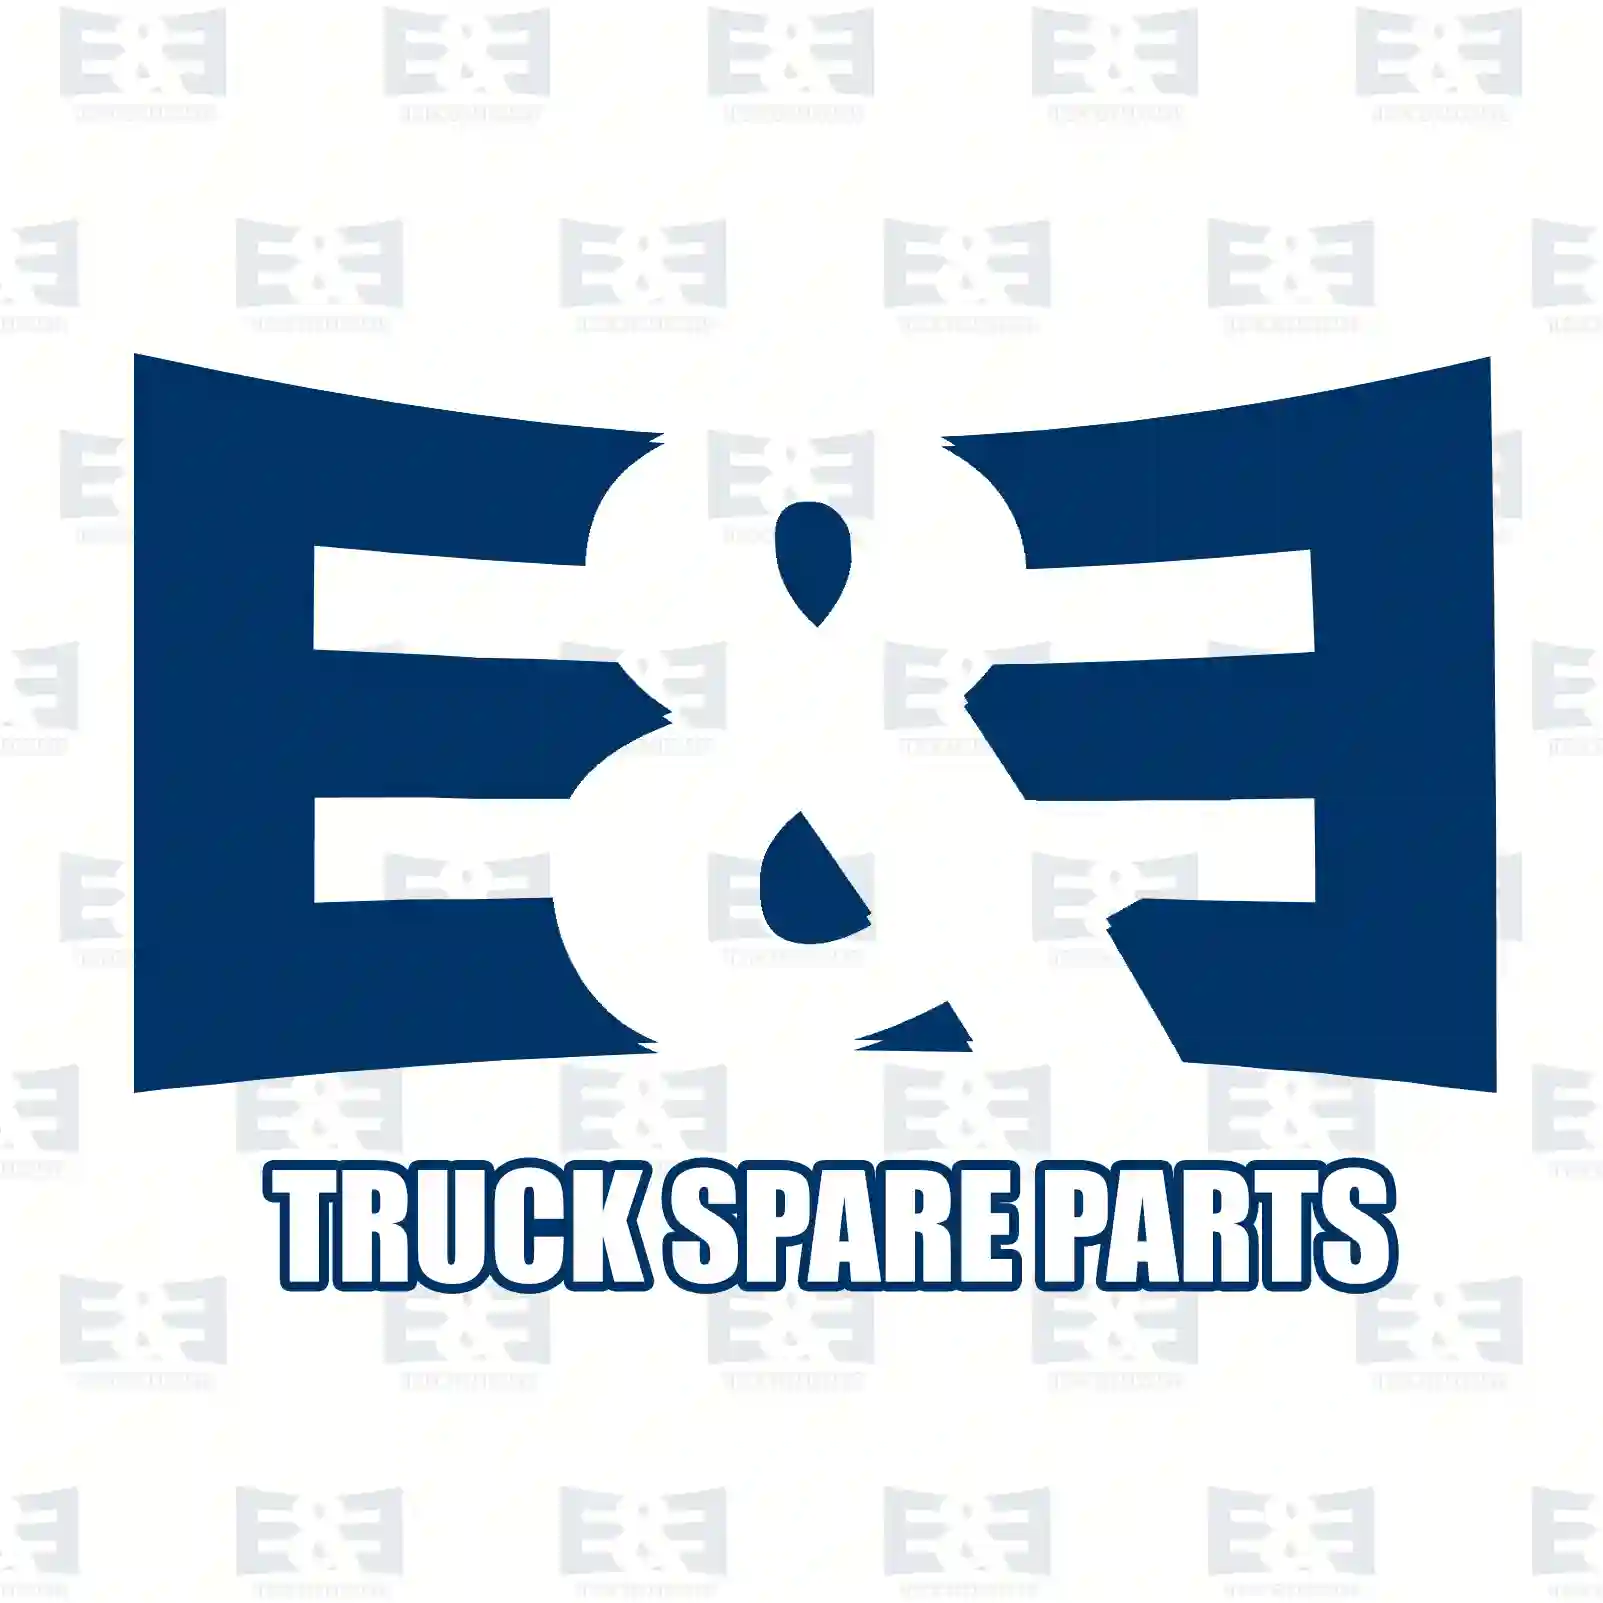 Load sensitive valve, 2E2294305, 1607838, 1625753, ||  2E2294305 E&E Truck Spare Parts | Truck Spare Parts, Auotomotive Spare Parts Load sensitive valve, 2E2294305, 1607838, 1625753, ||  2E2294305 E&E Truck Spare Parts | Truck Spare Parts, Auotomotive Spare Parts